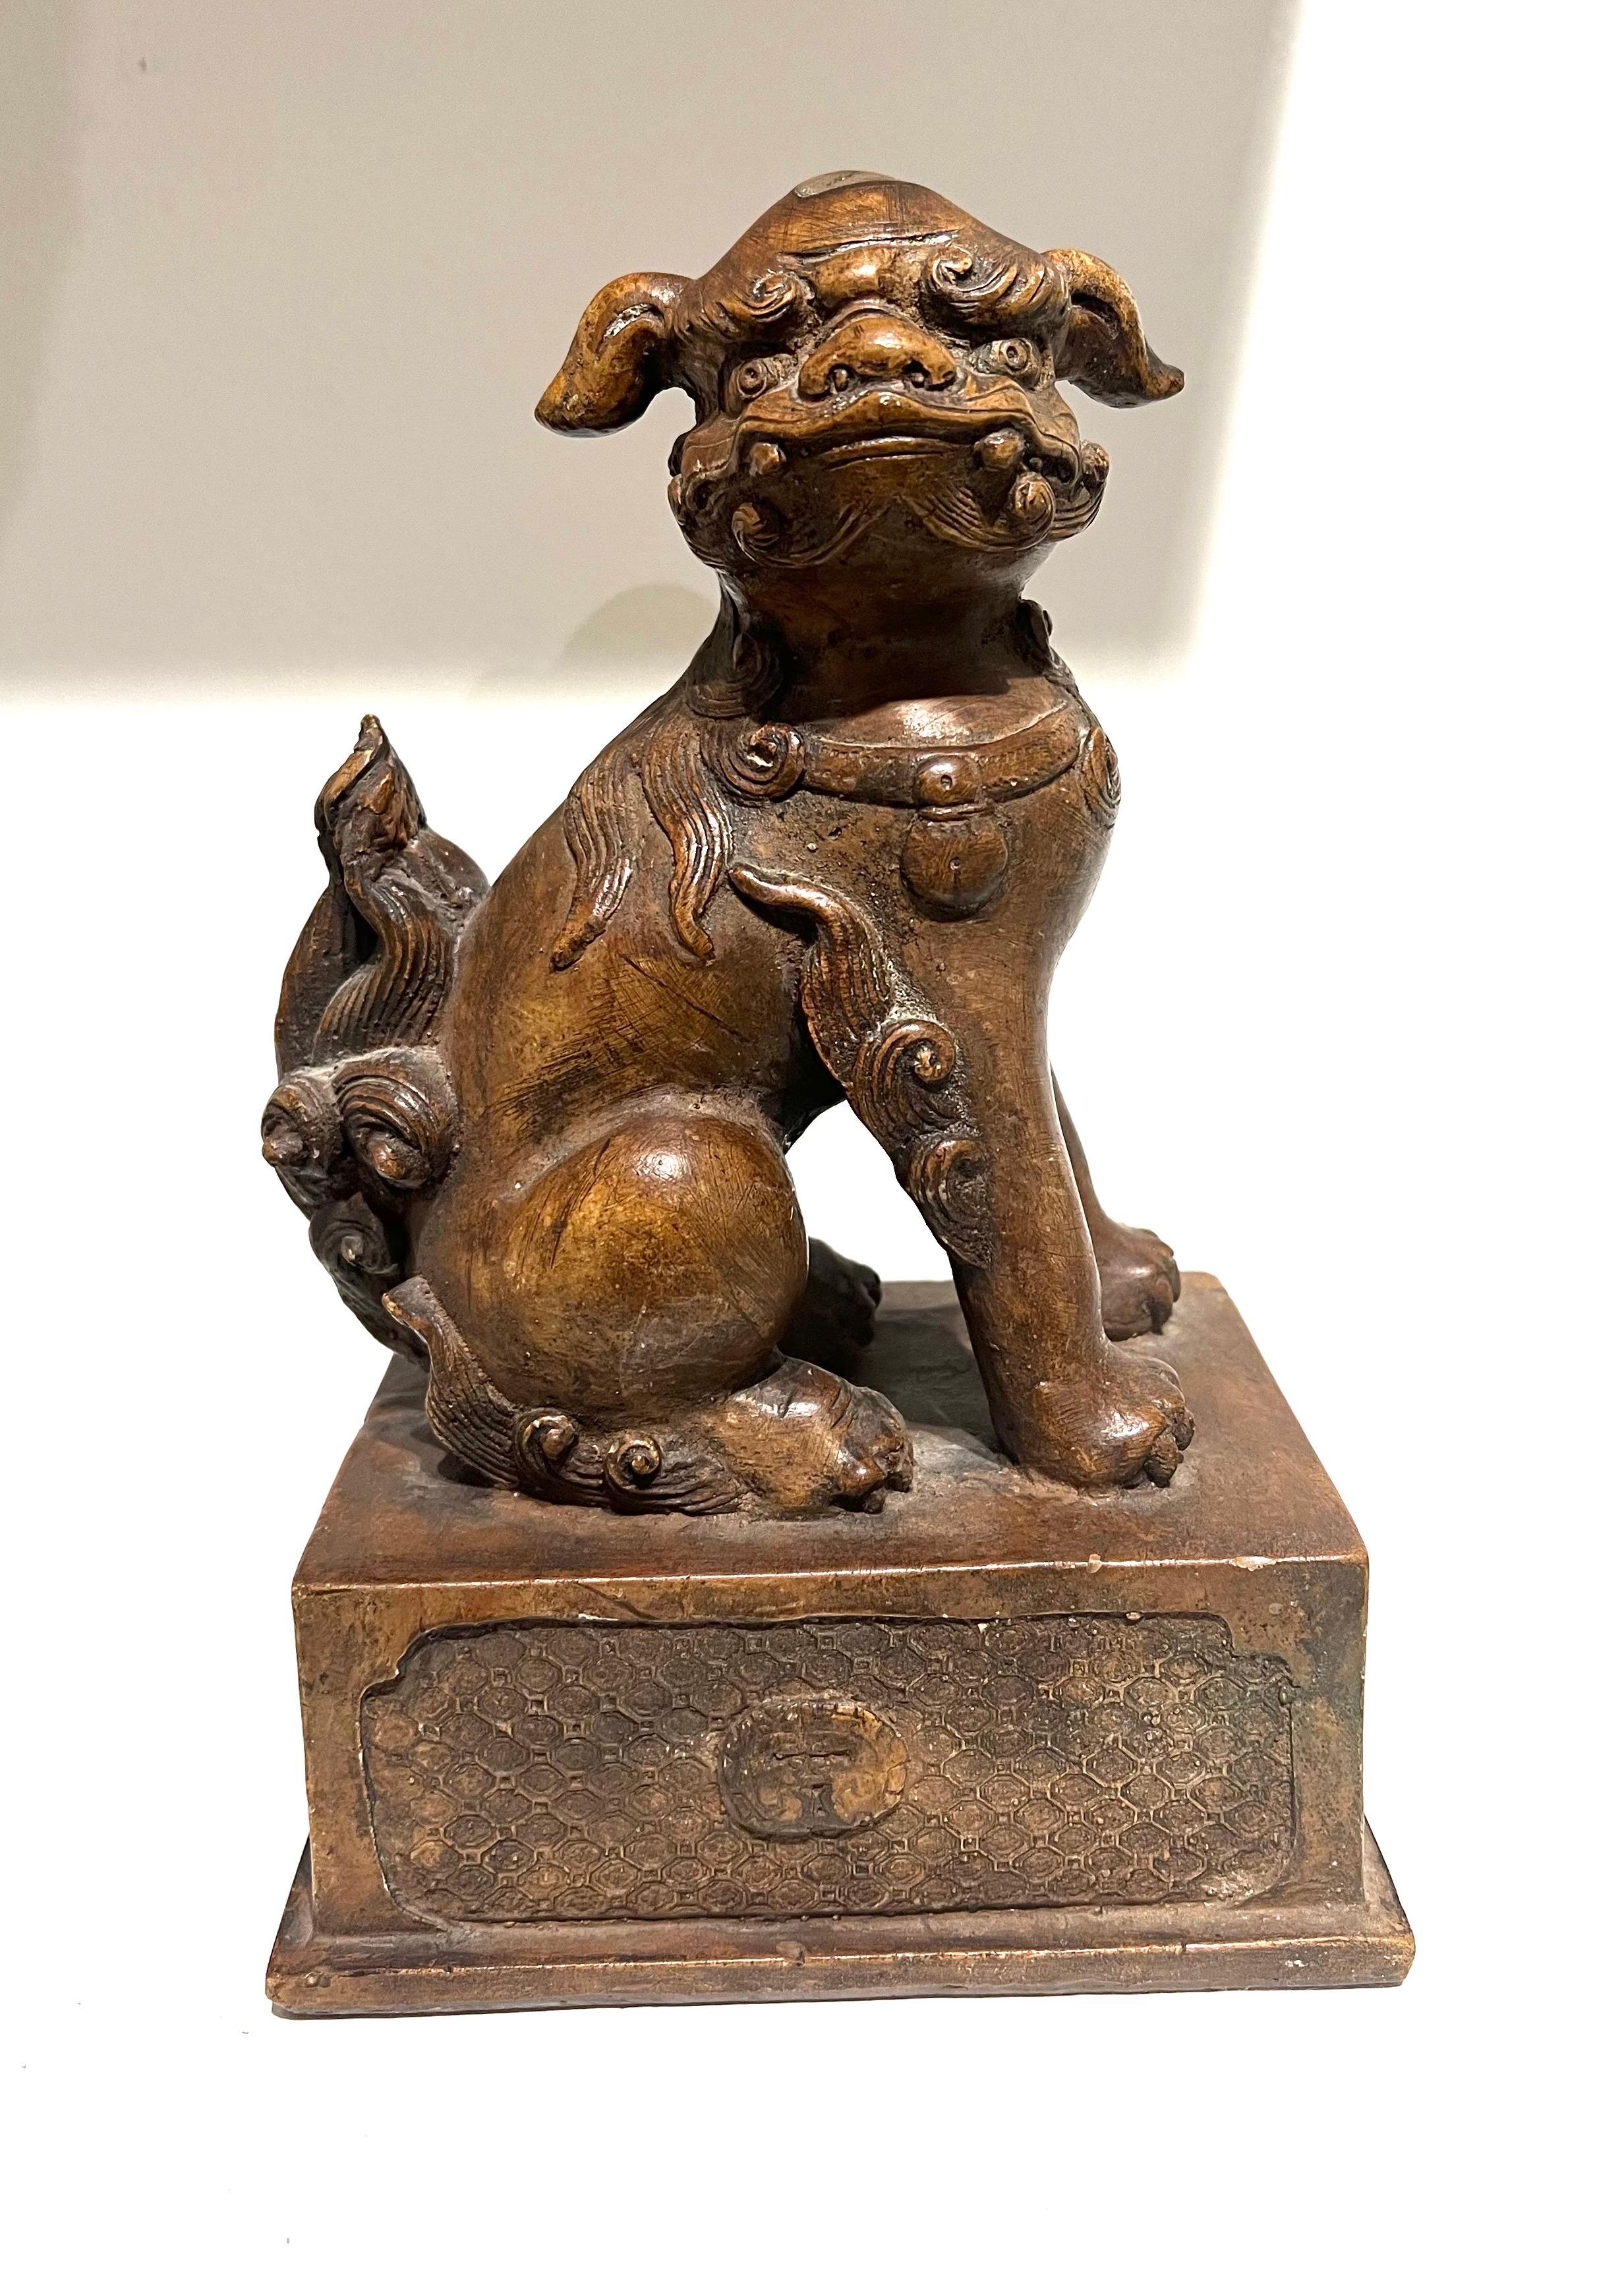 Hübsche Foo Dog Skulptur aus Gips in Bronze-Optik, ca. 1970er Jahre.